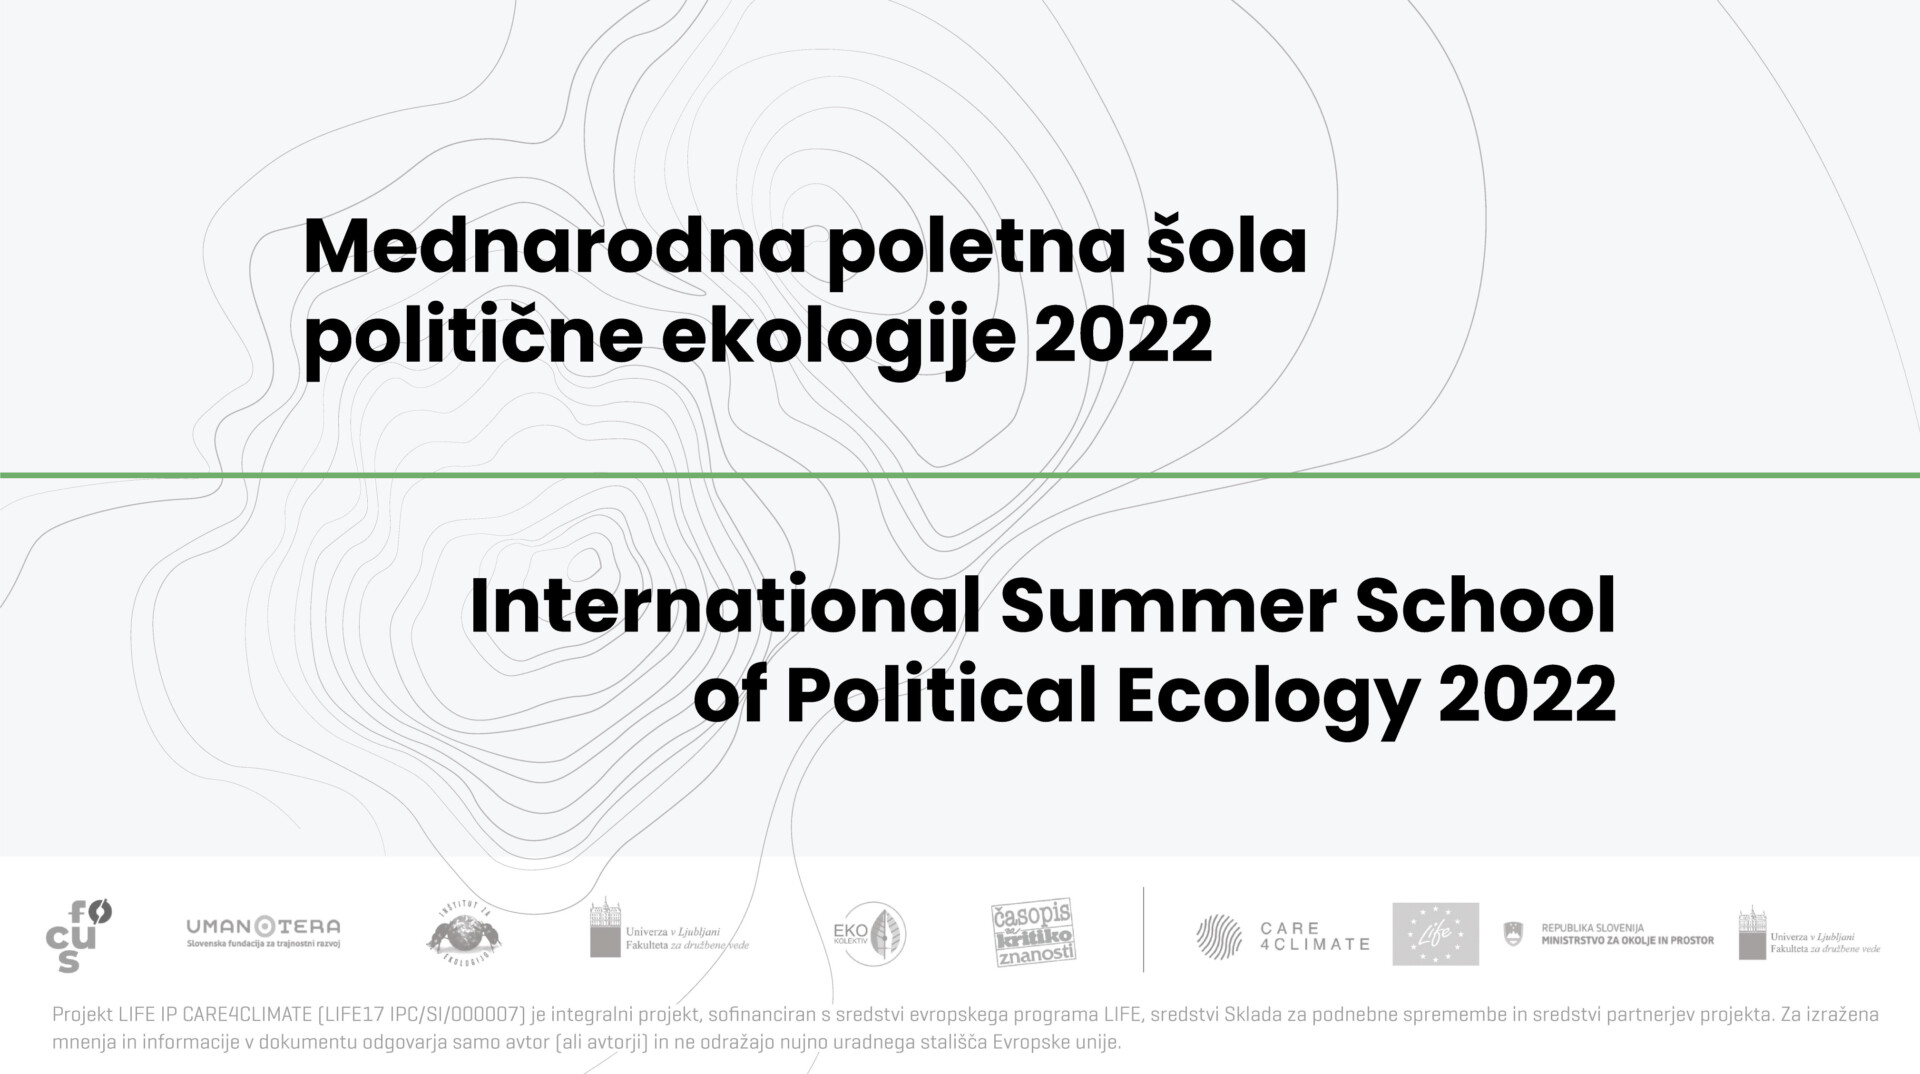 Mednarodna poletna sola politicne ekologije